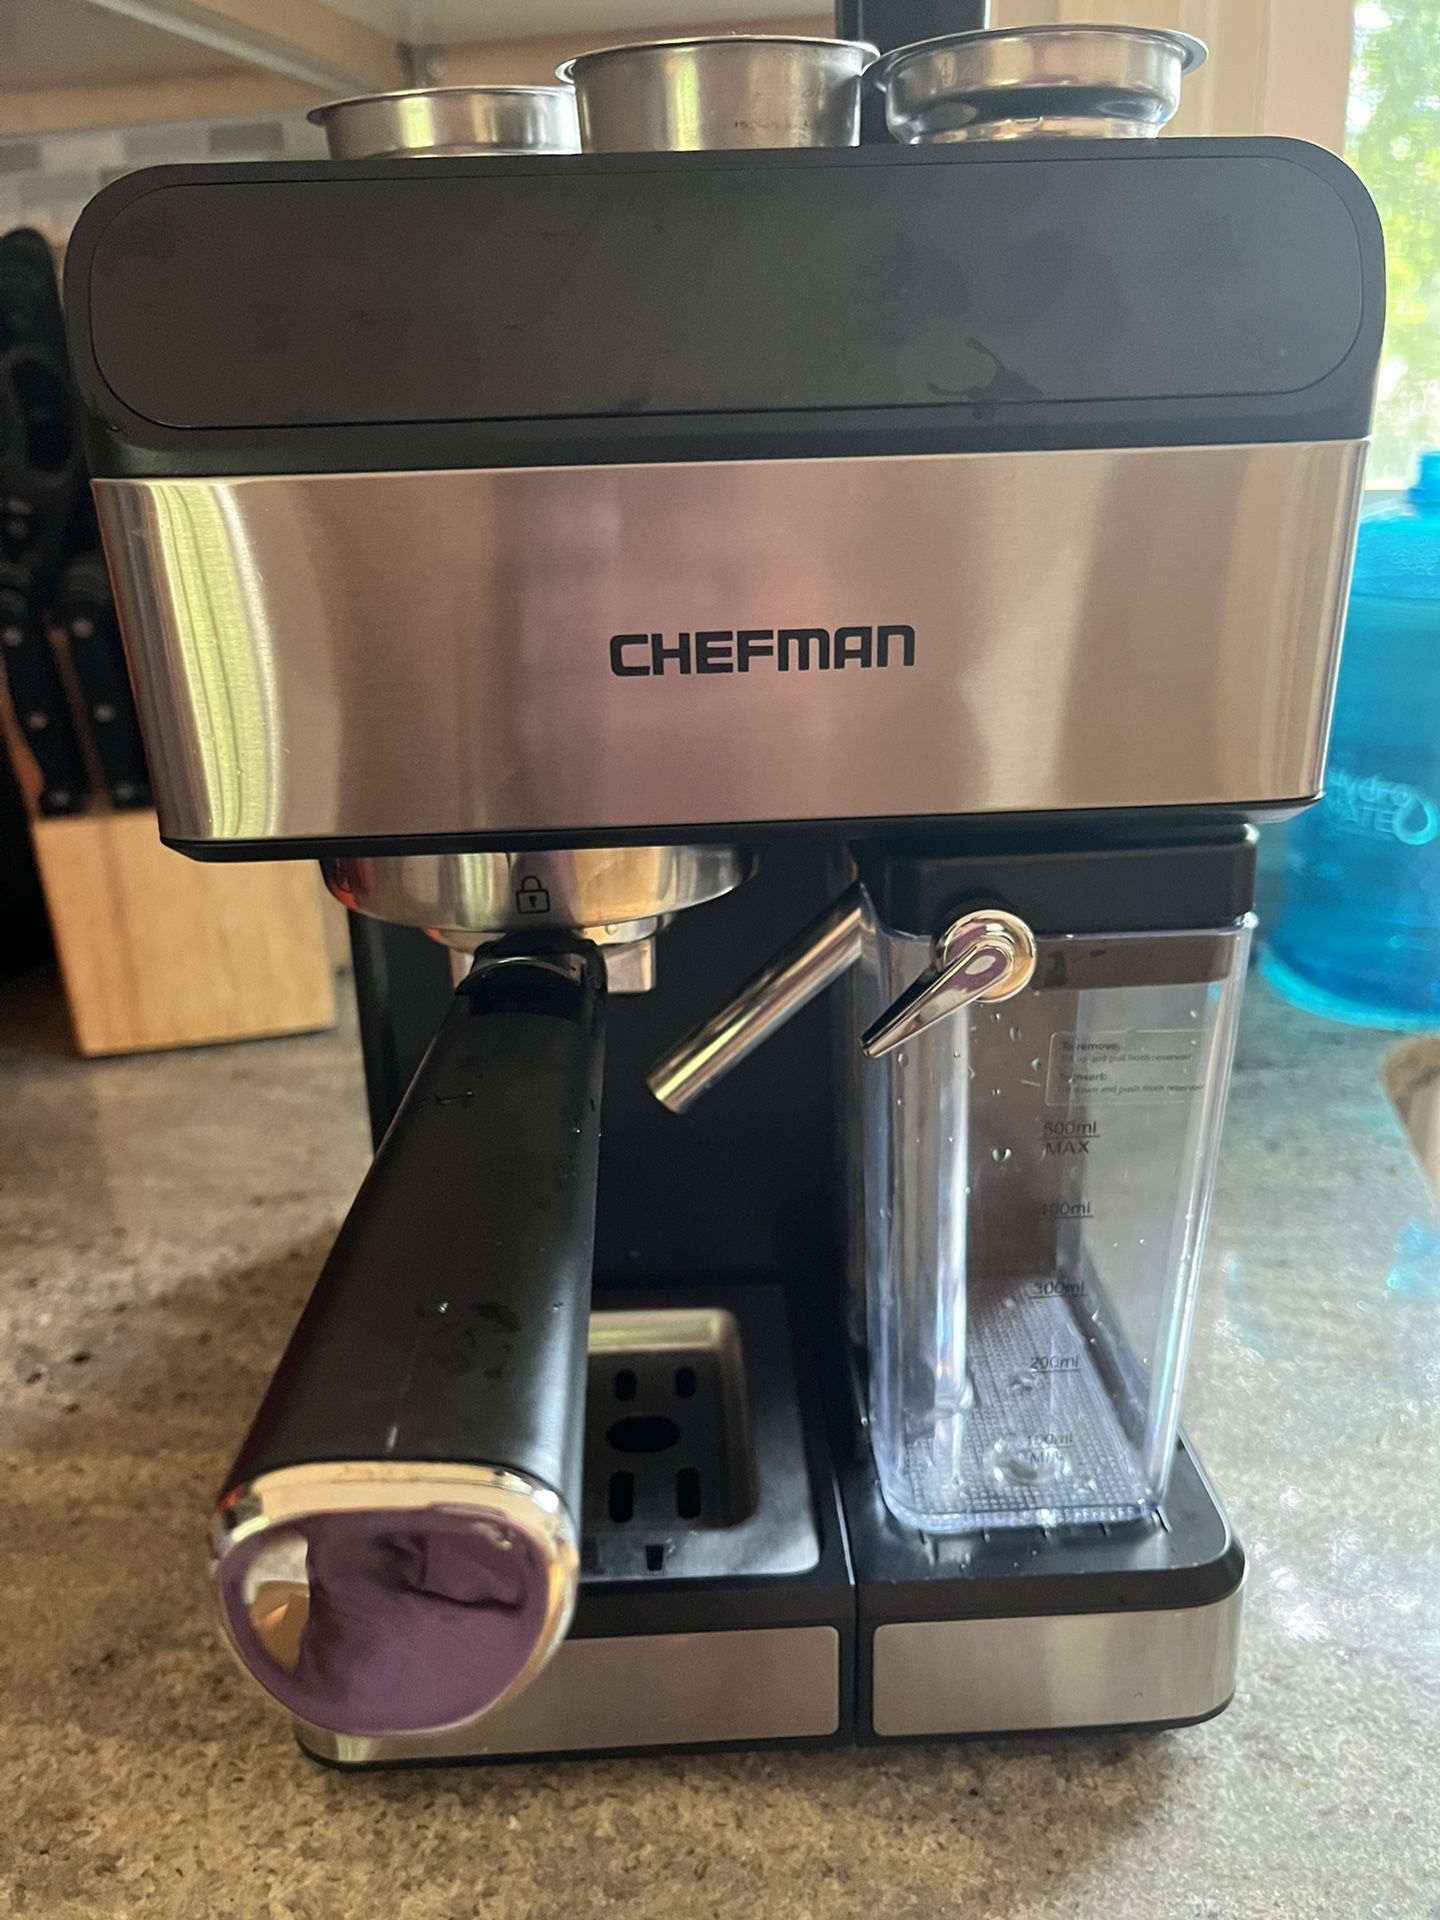 Chefman 6-in-1 Stainless Steel 15-Bar Pump Espresso Machine